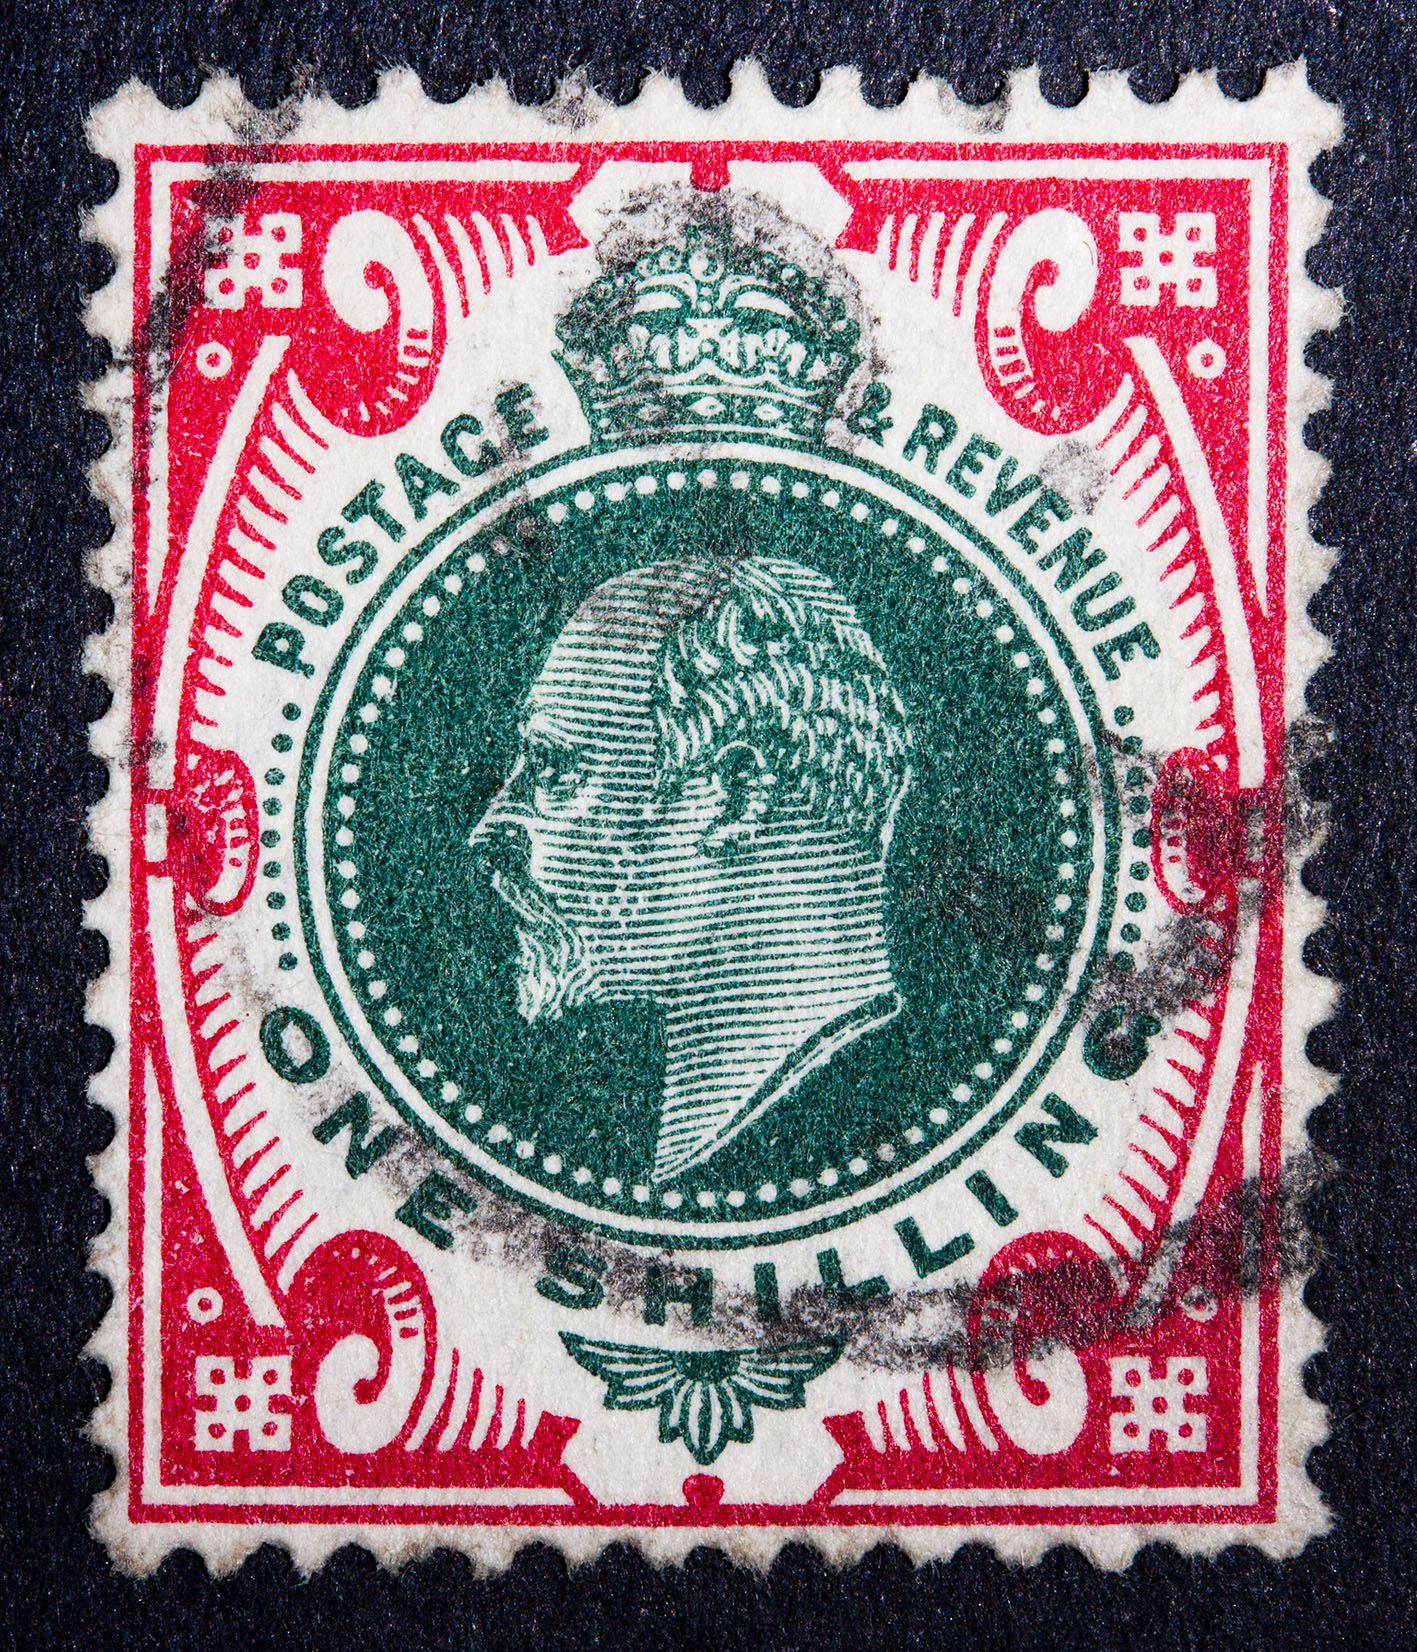 Stamp of King Edward VII